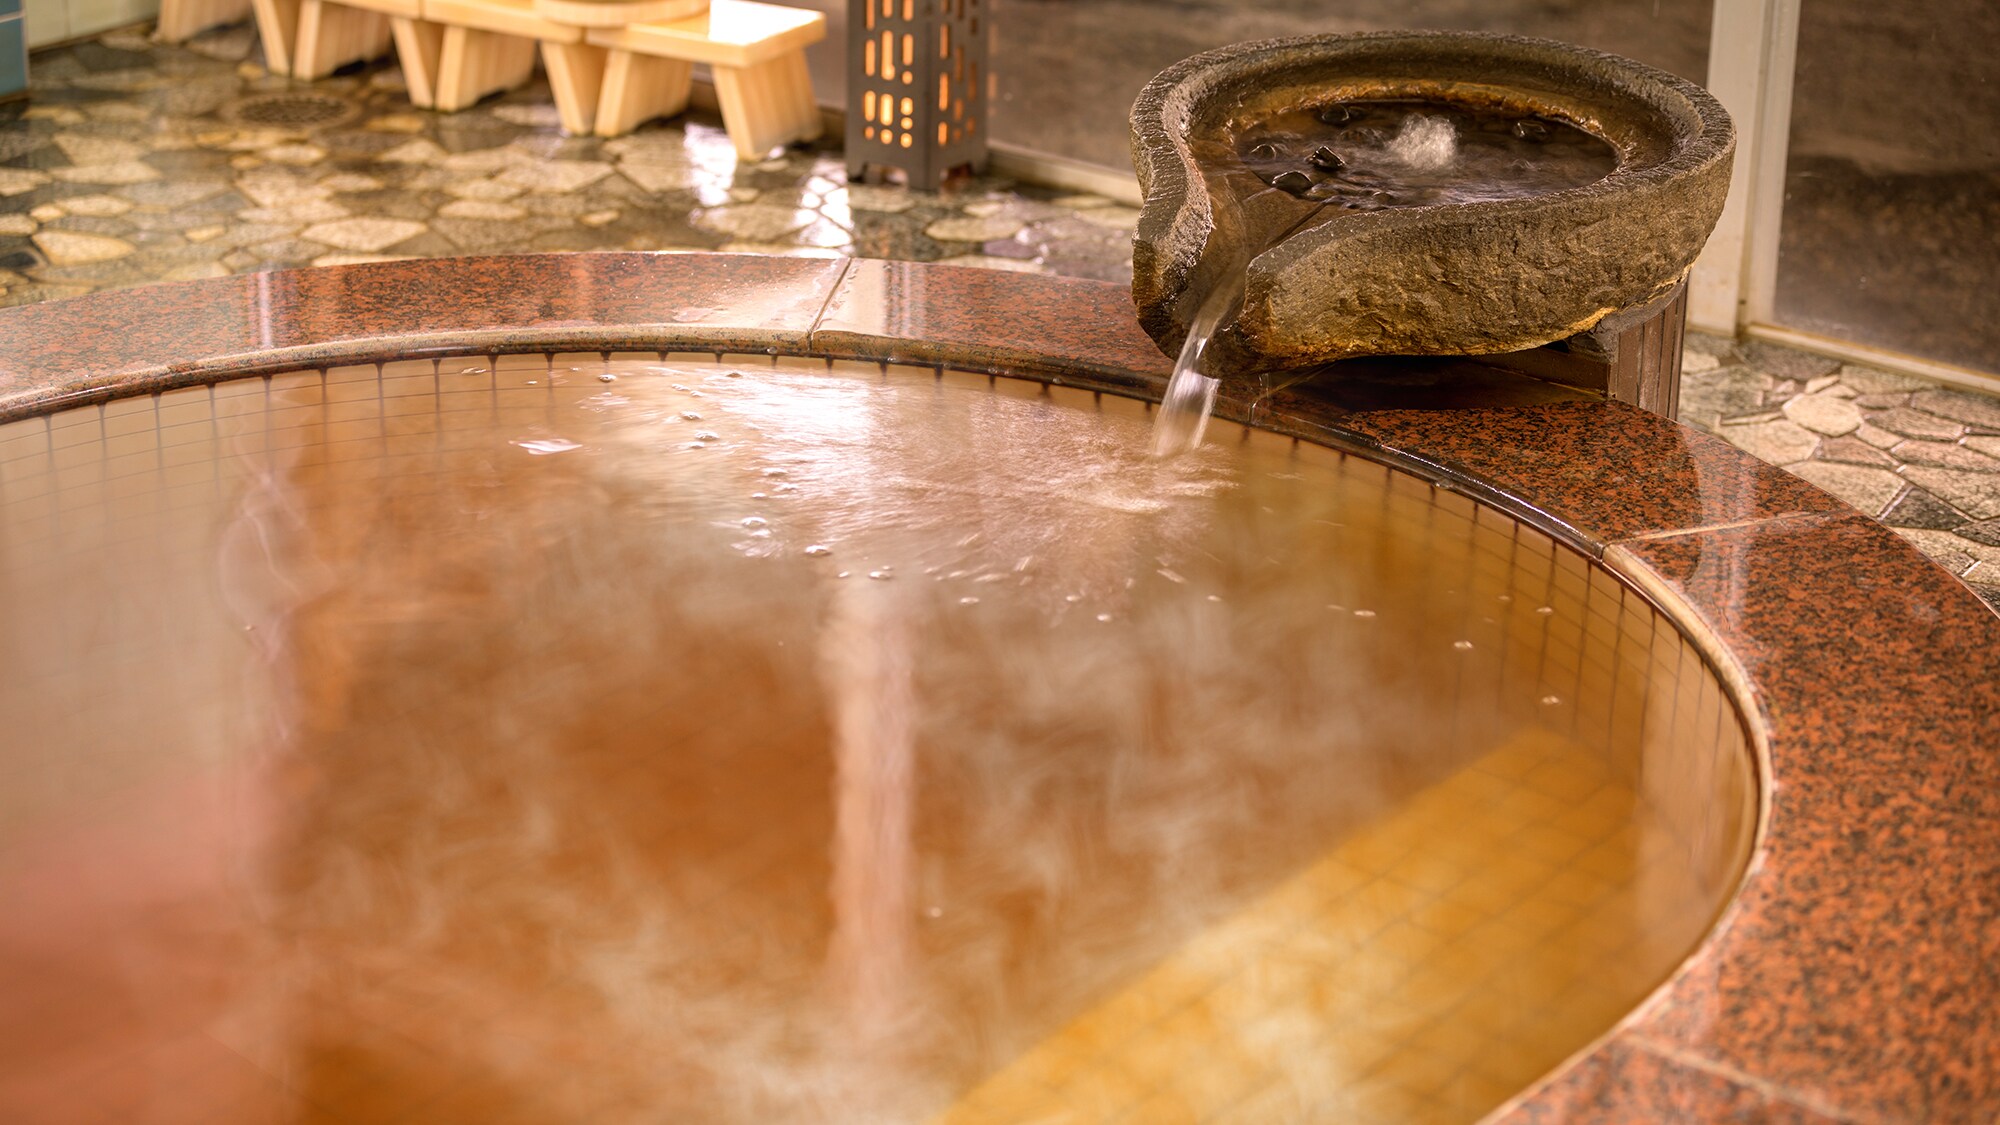 Natural hot spring "Amber no Yu"